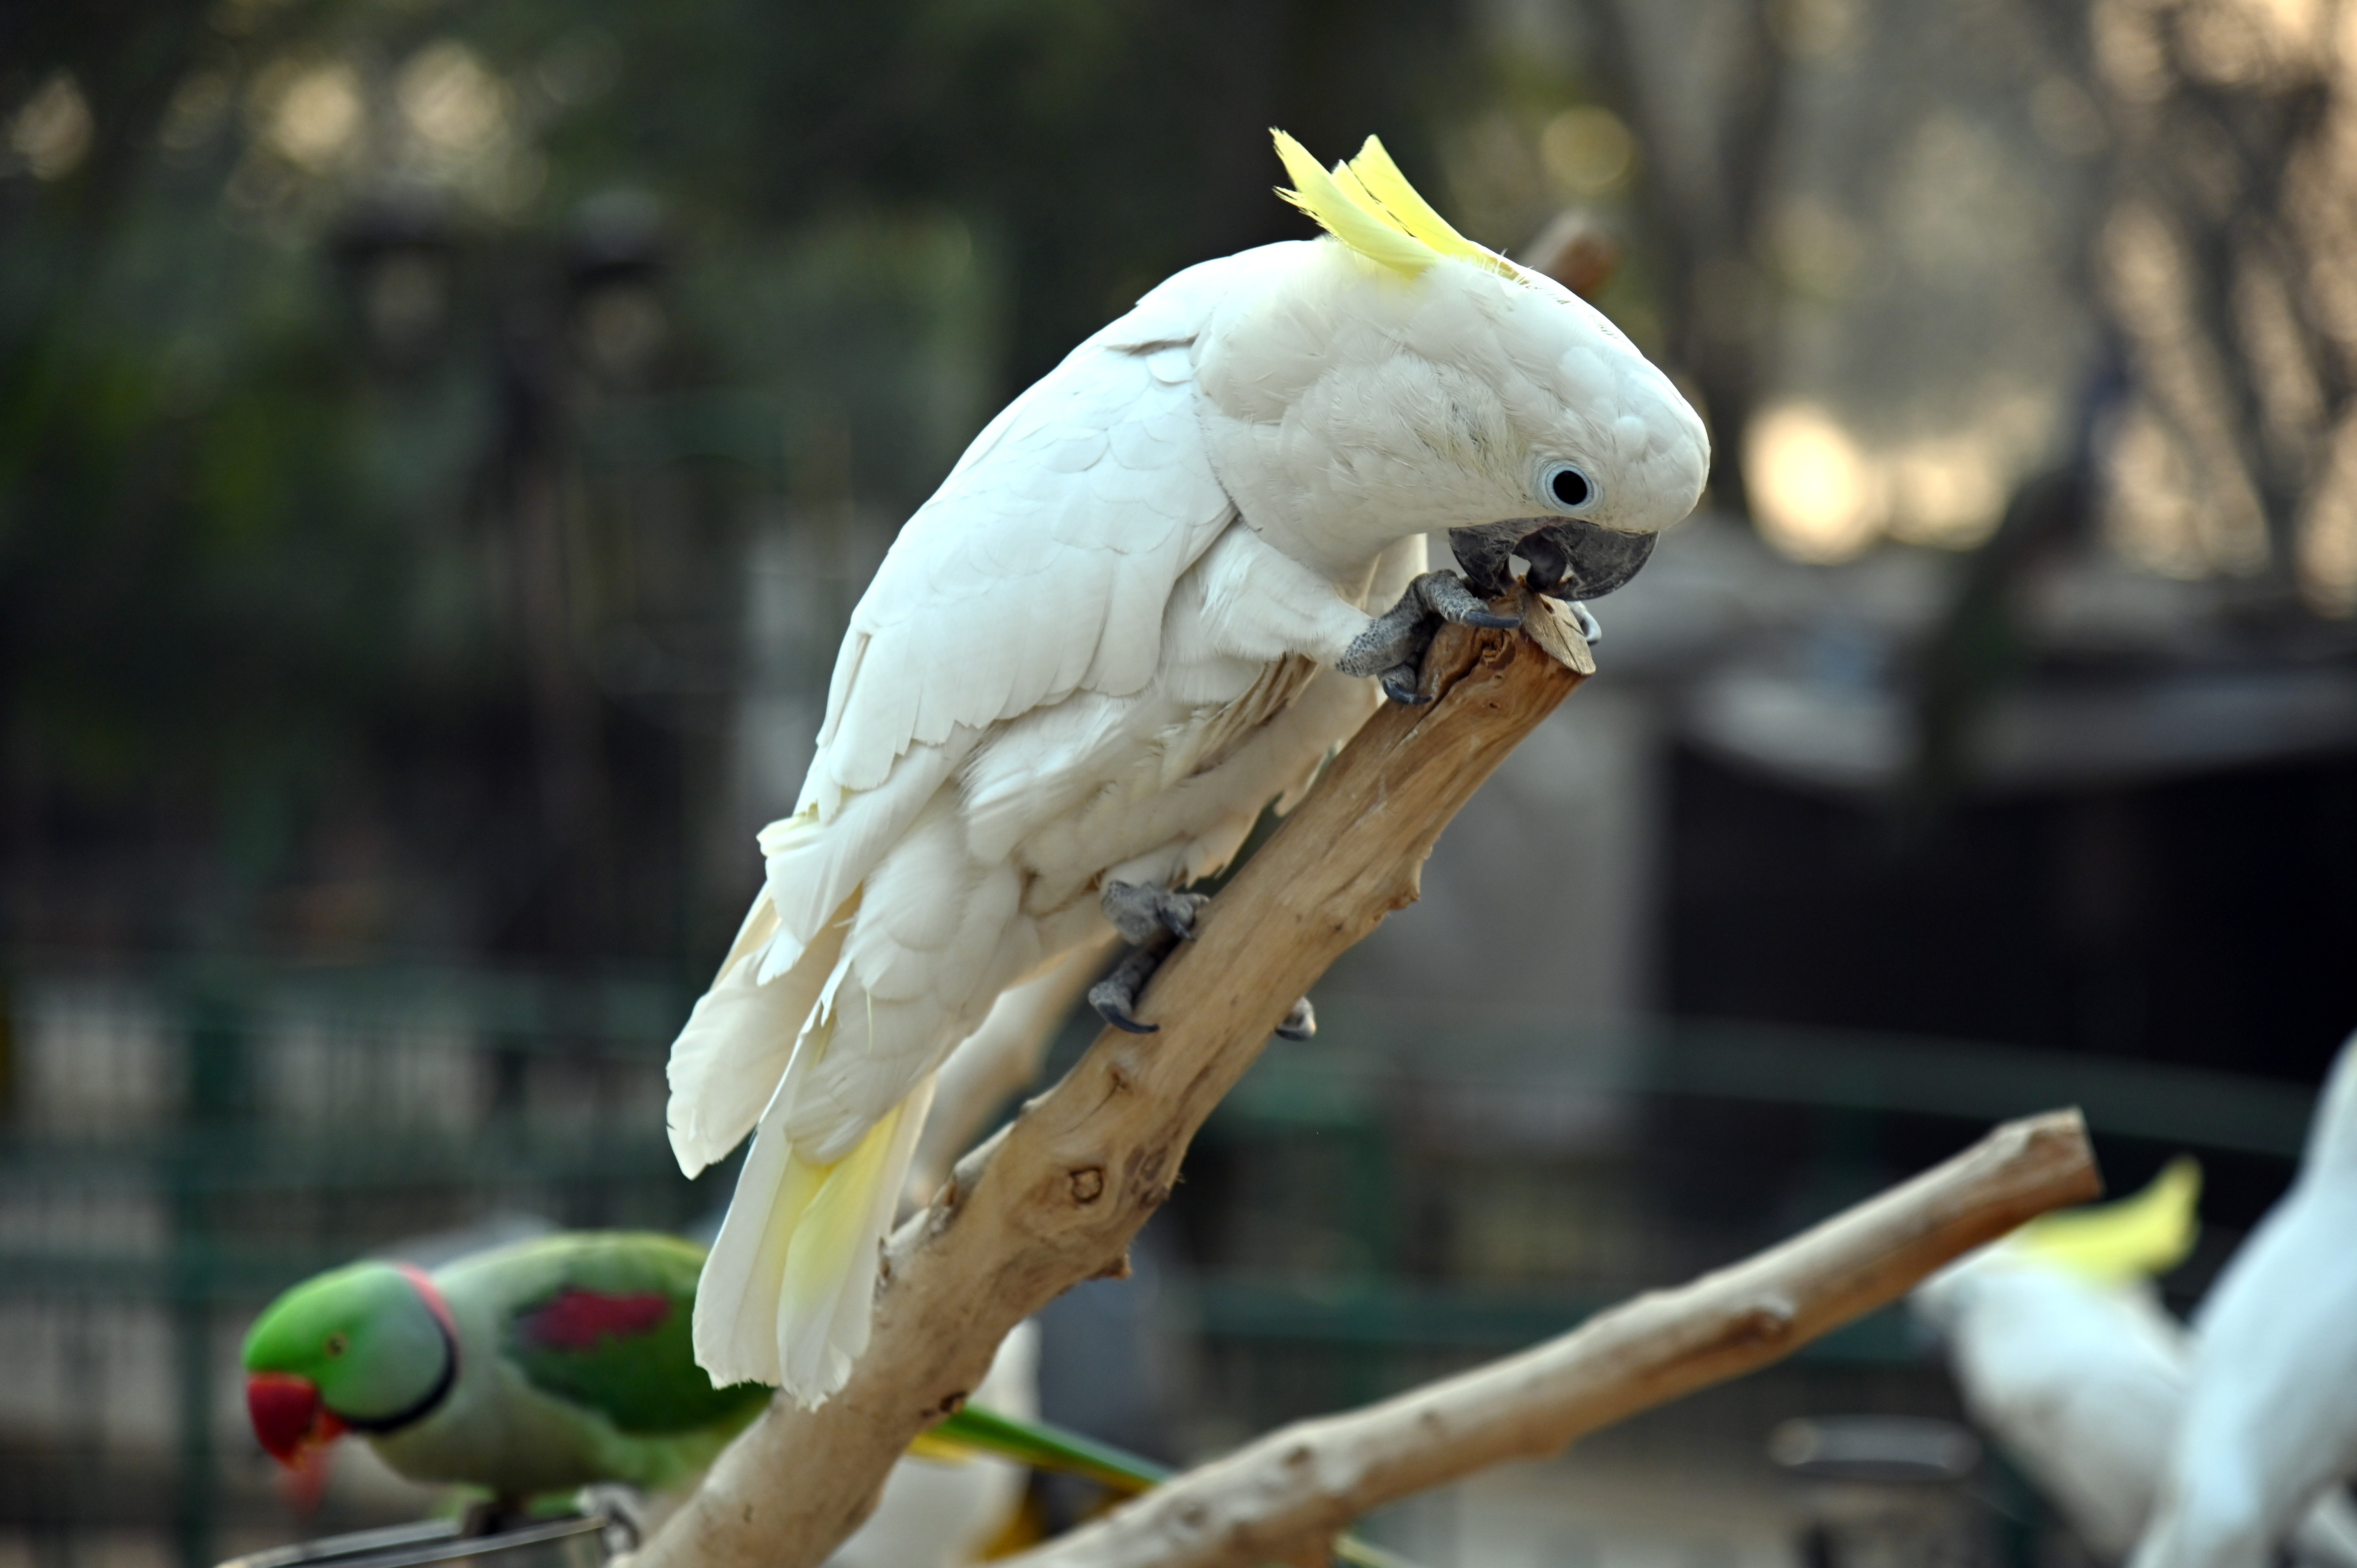 The White cockatoo